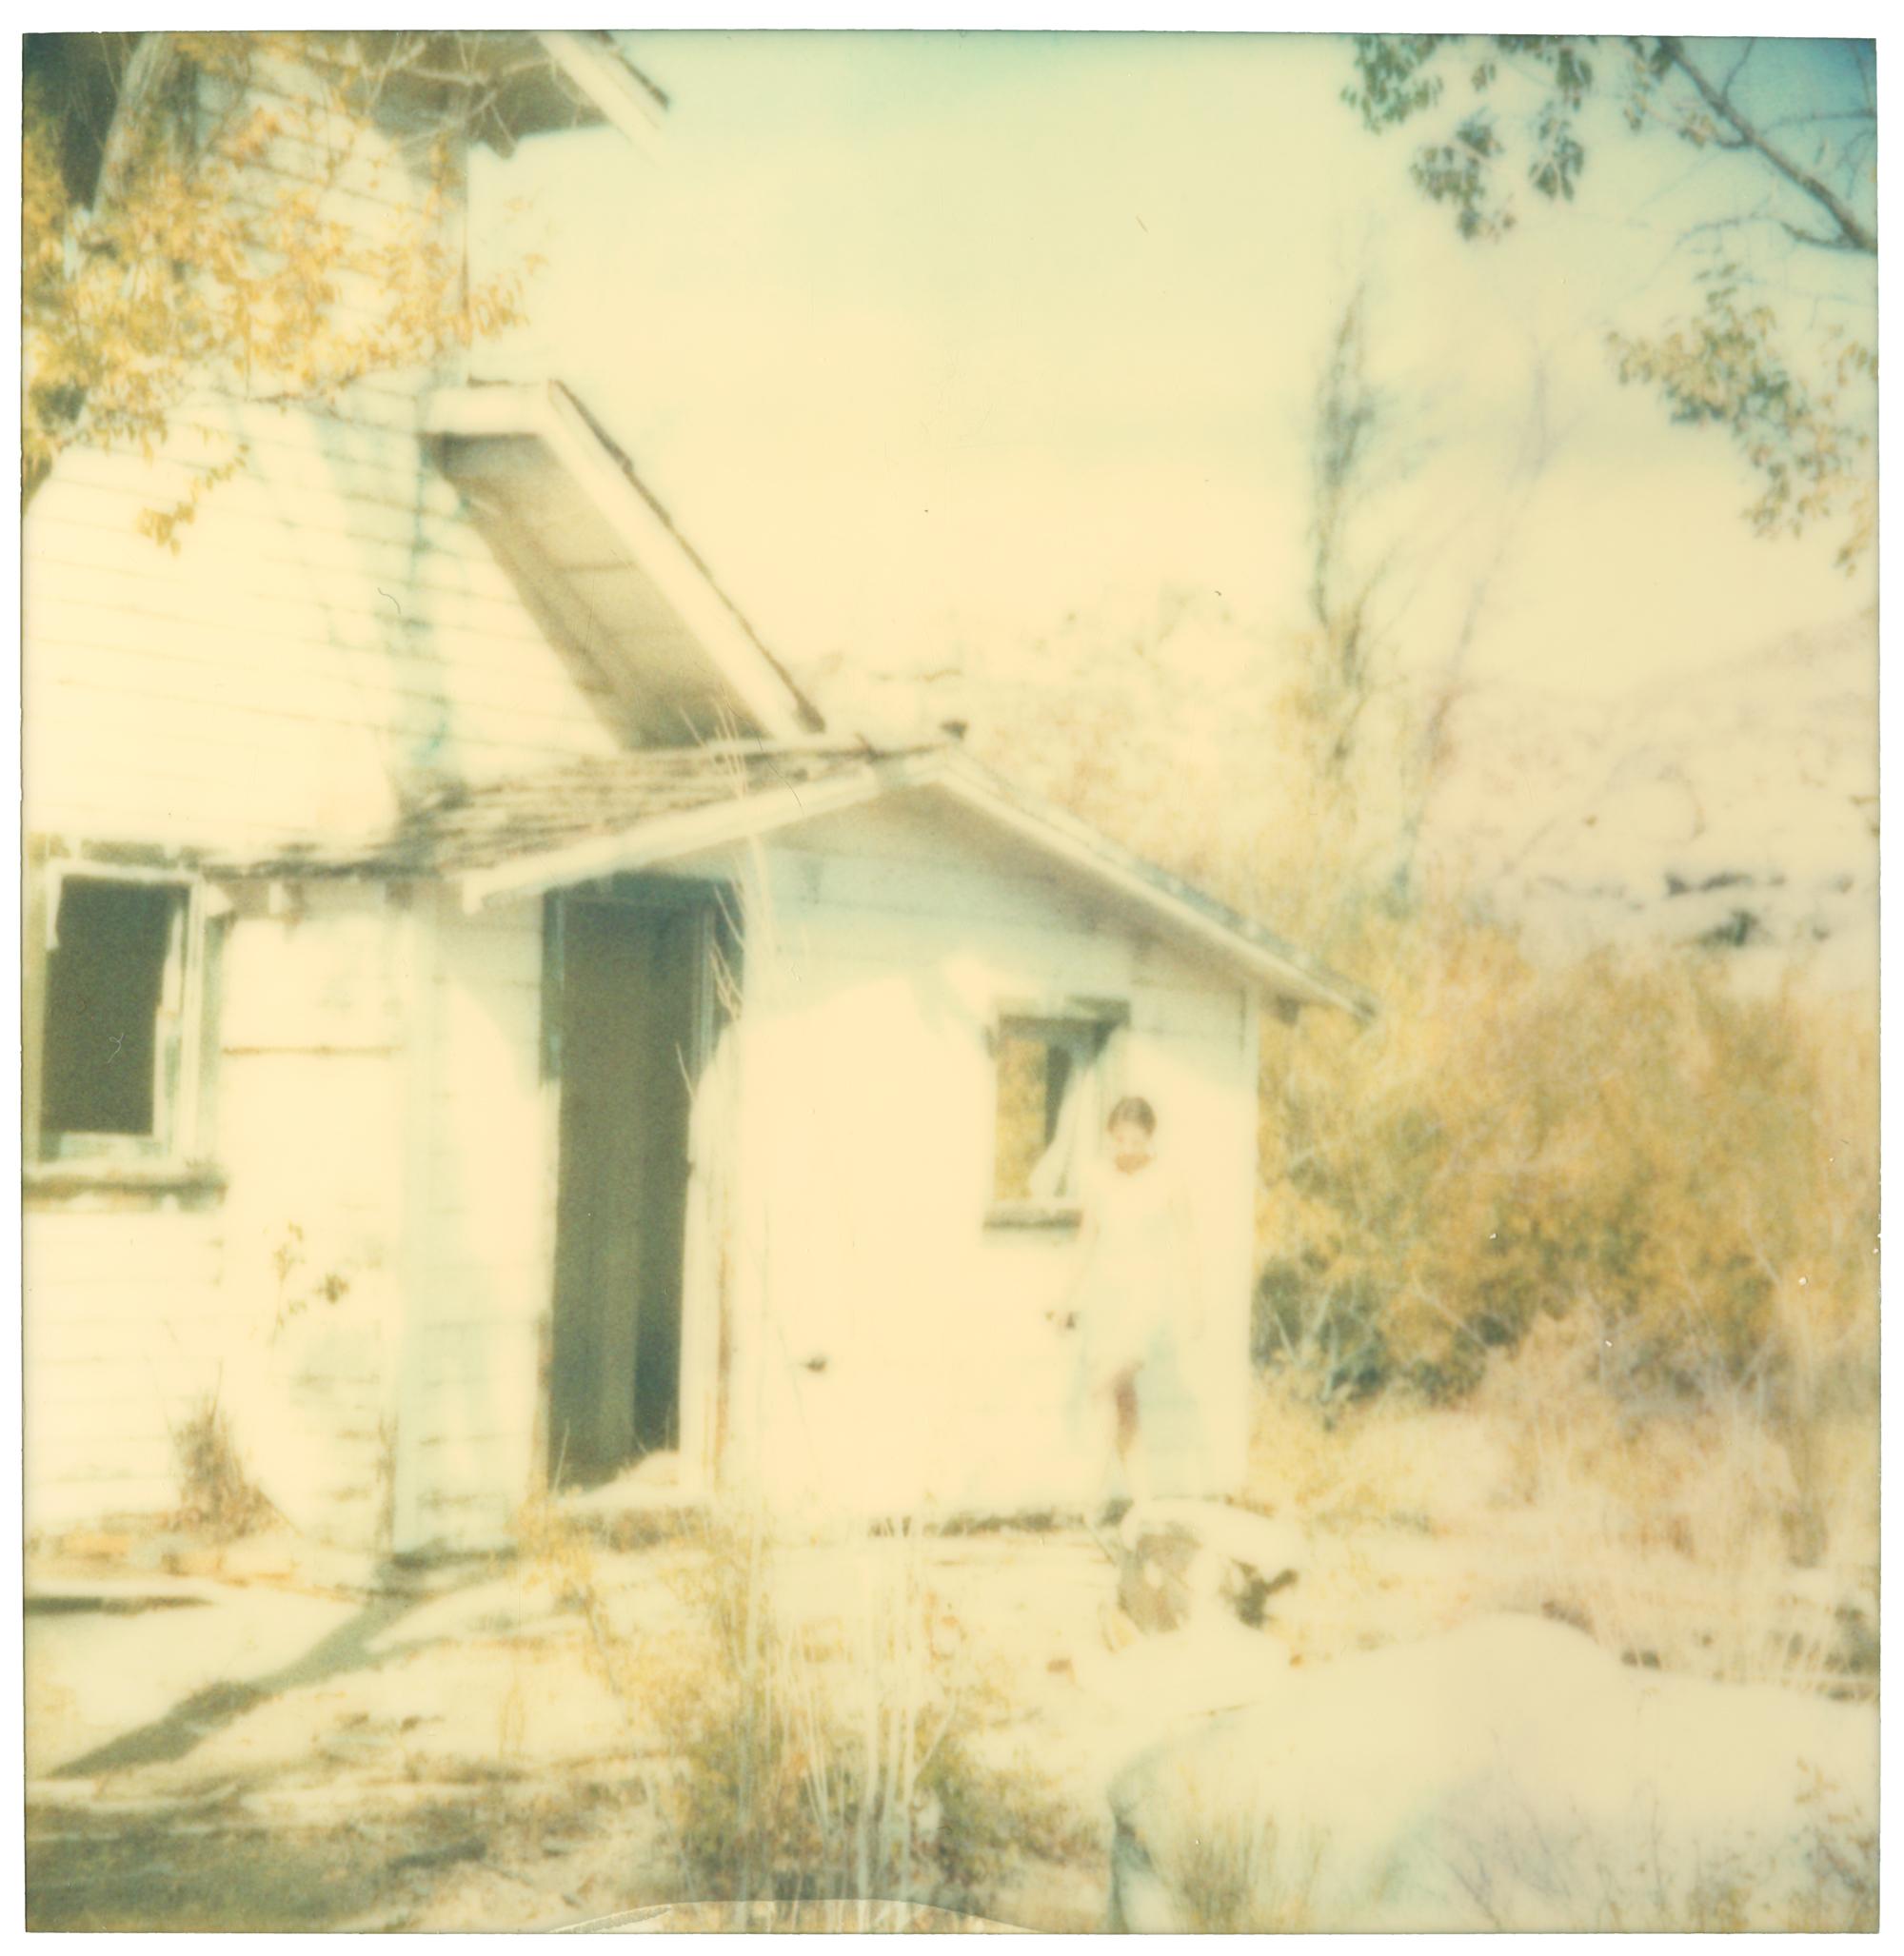 La dernière saison (Wastelands), diptyque - Polaroid, expiré. Contemporain, Couleur - Beige Color Photograph par Stefanie Schneider